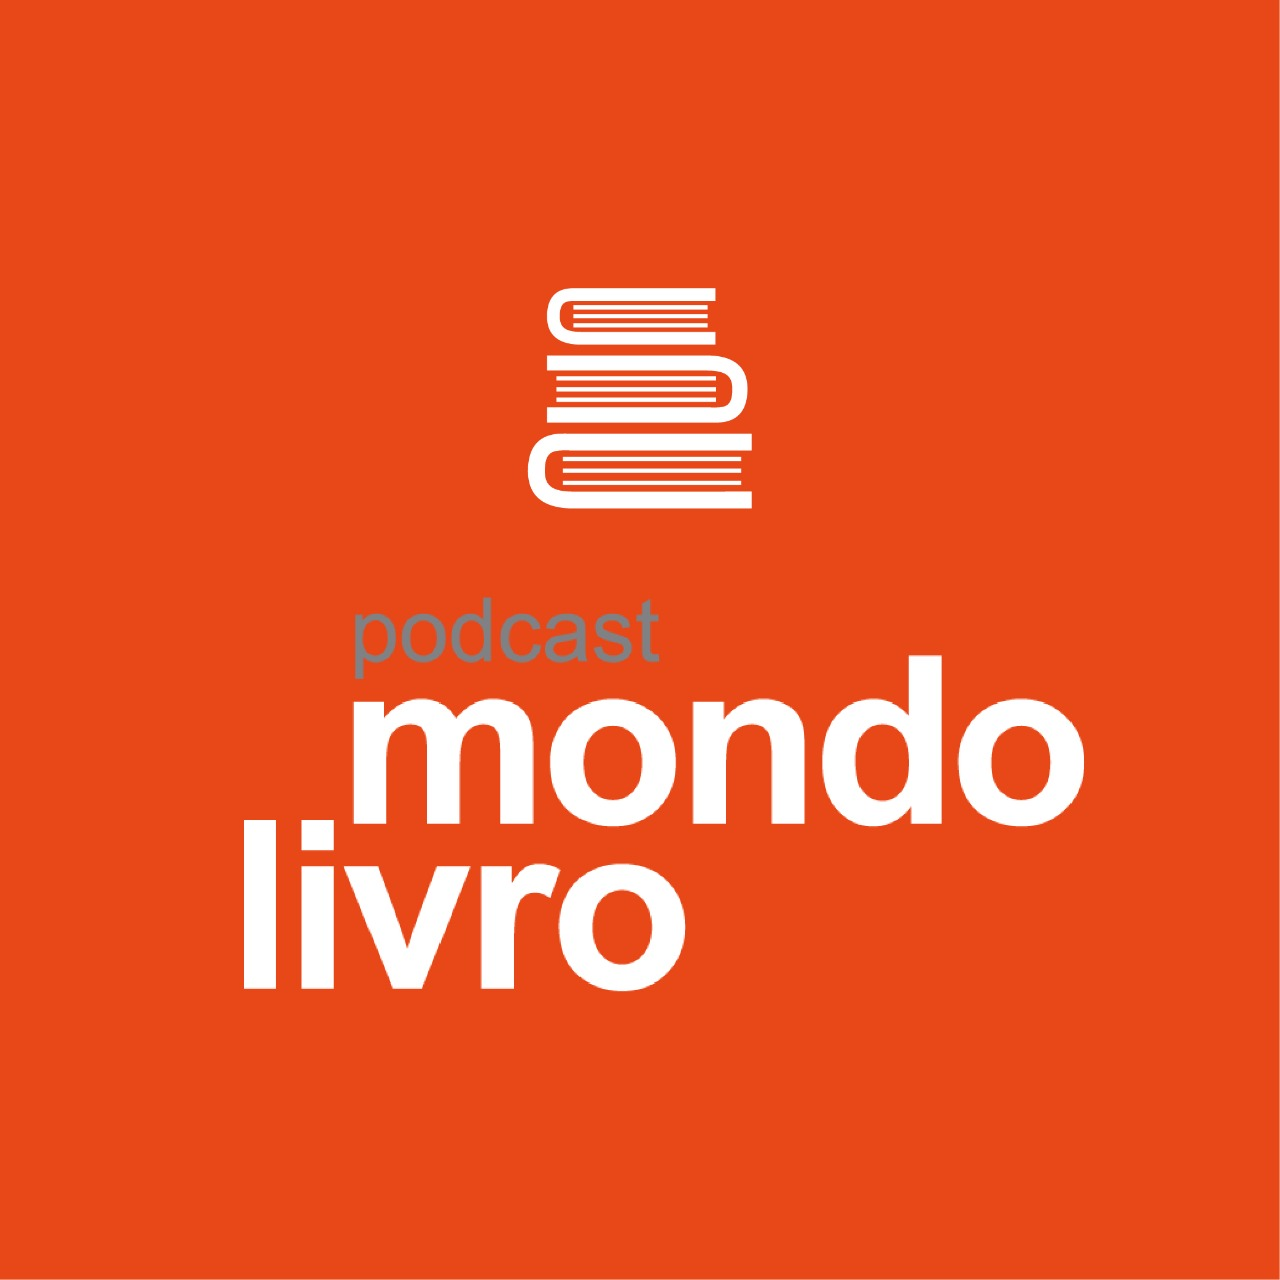 Mondolivro Podcast - Um podcast com Ricardo Aleixo, finalista do Prêmio Oceanos